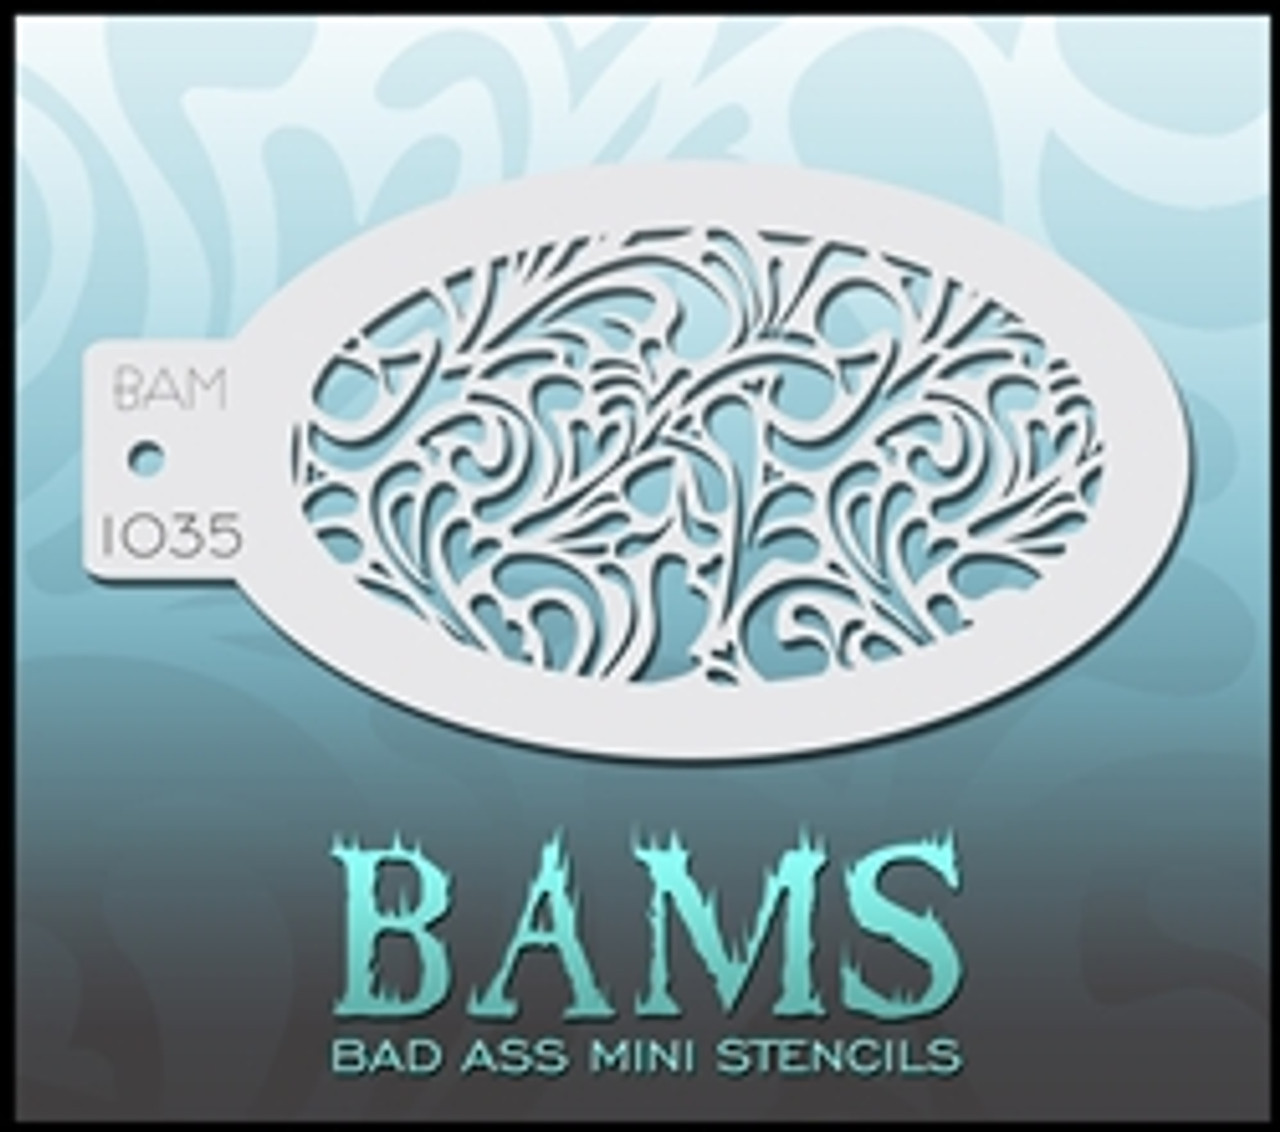 1035 Bad Ass Mini Stencil